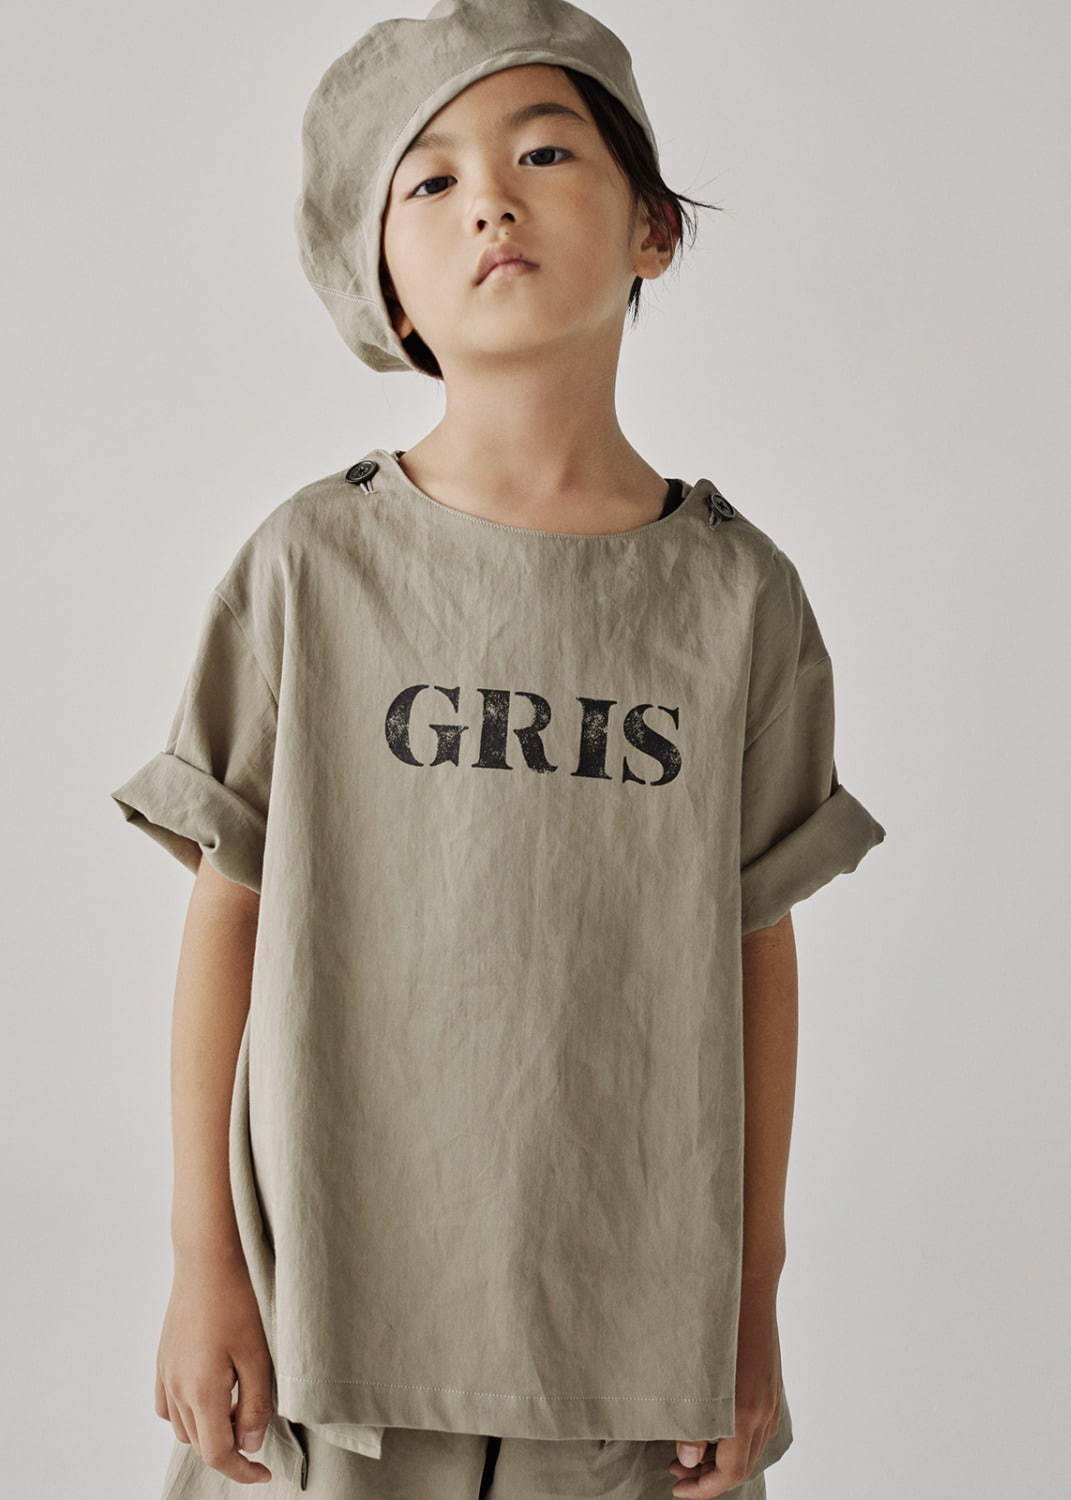 グリ(GRIS) 2020年春夏ウィメンズ&メンズコレクション  - 写真36